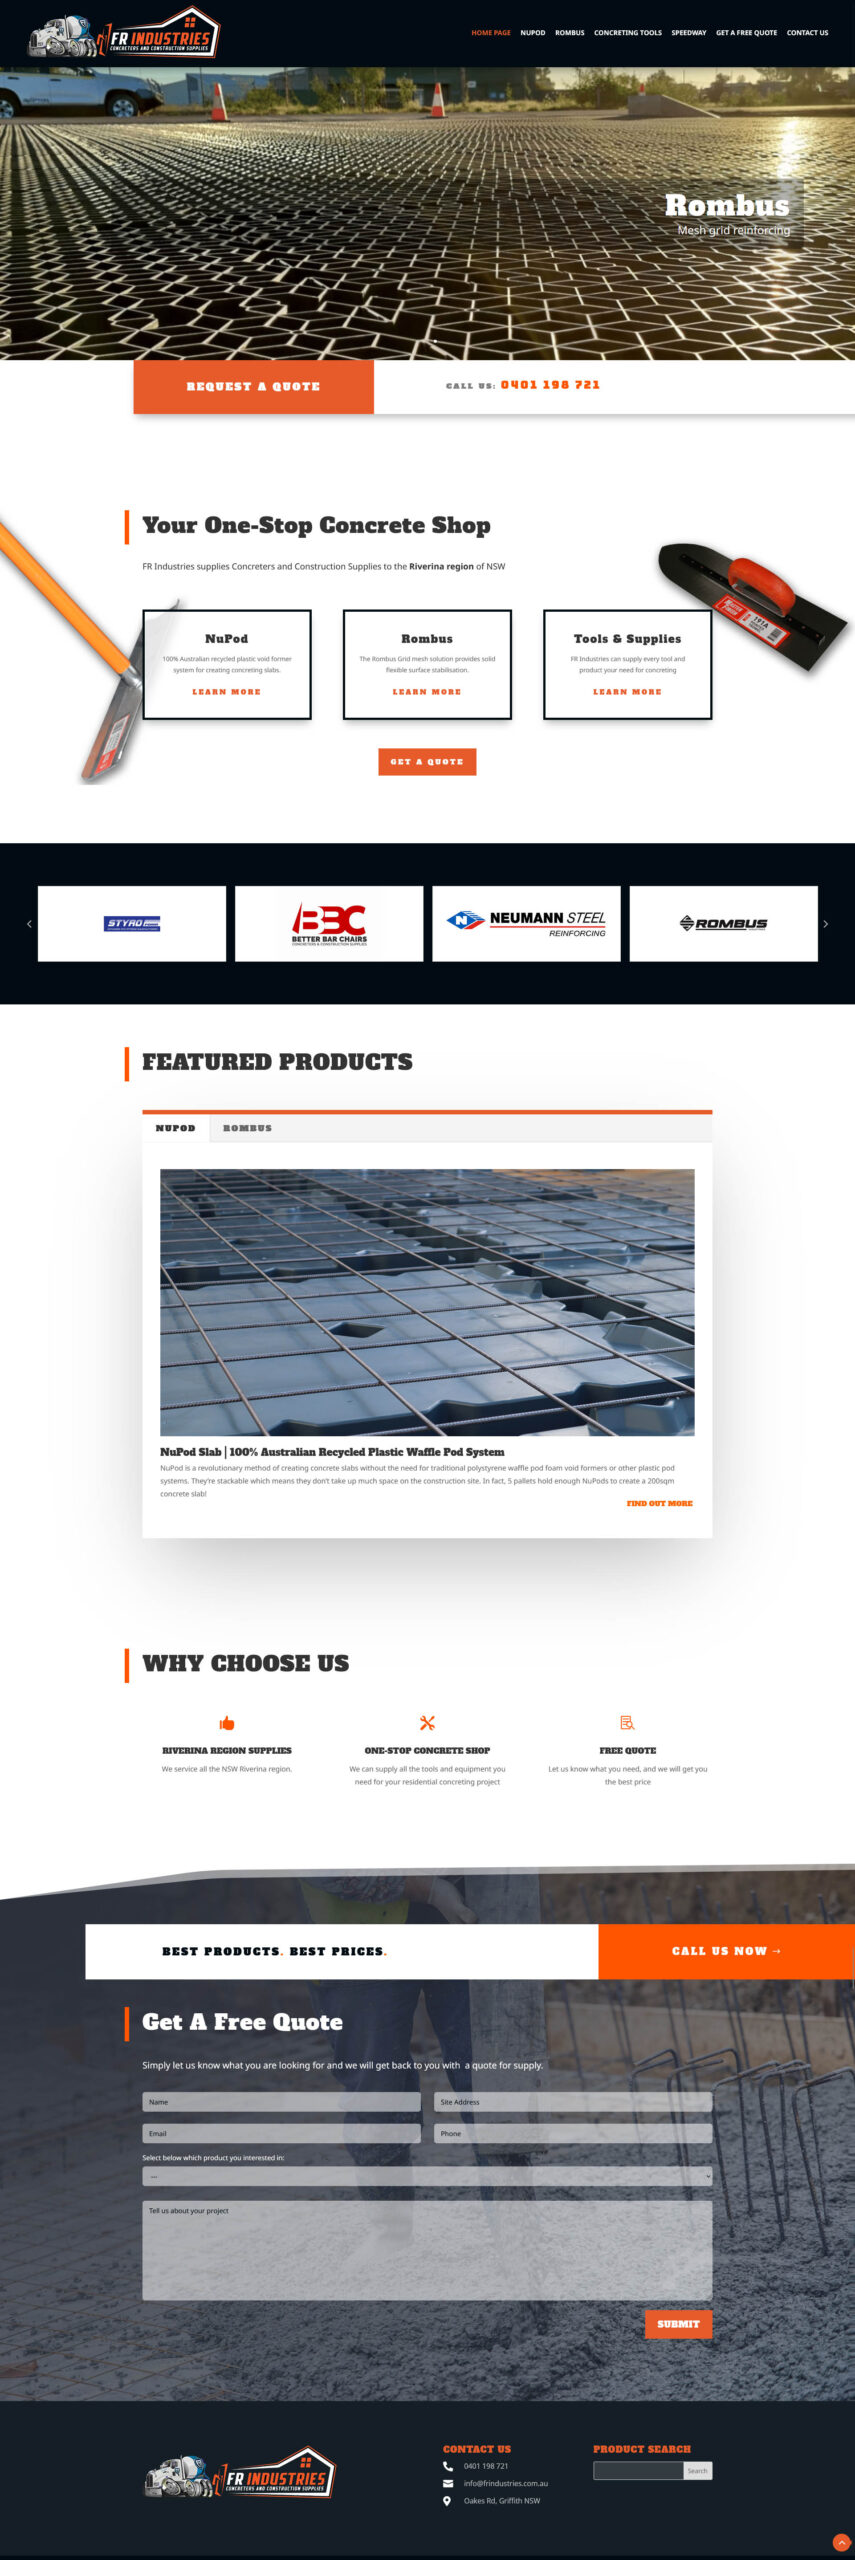 FR Industries website